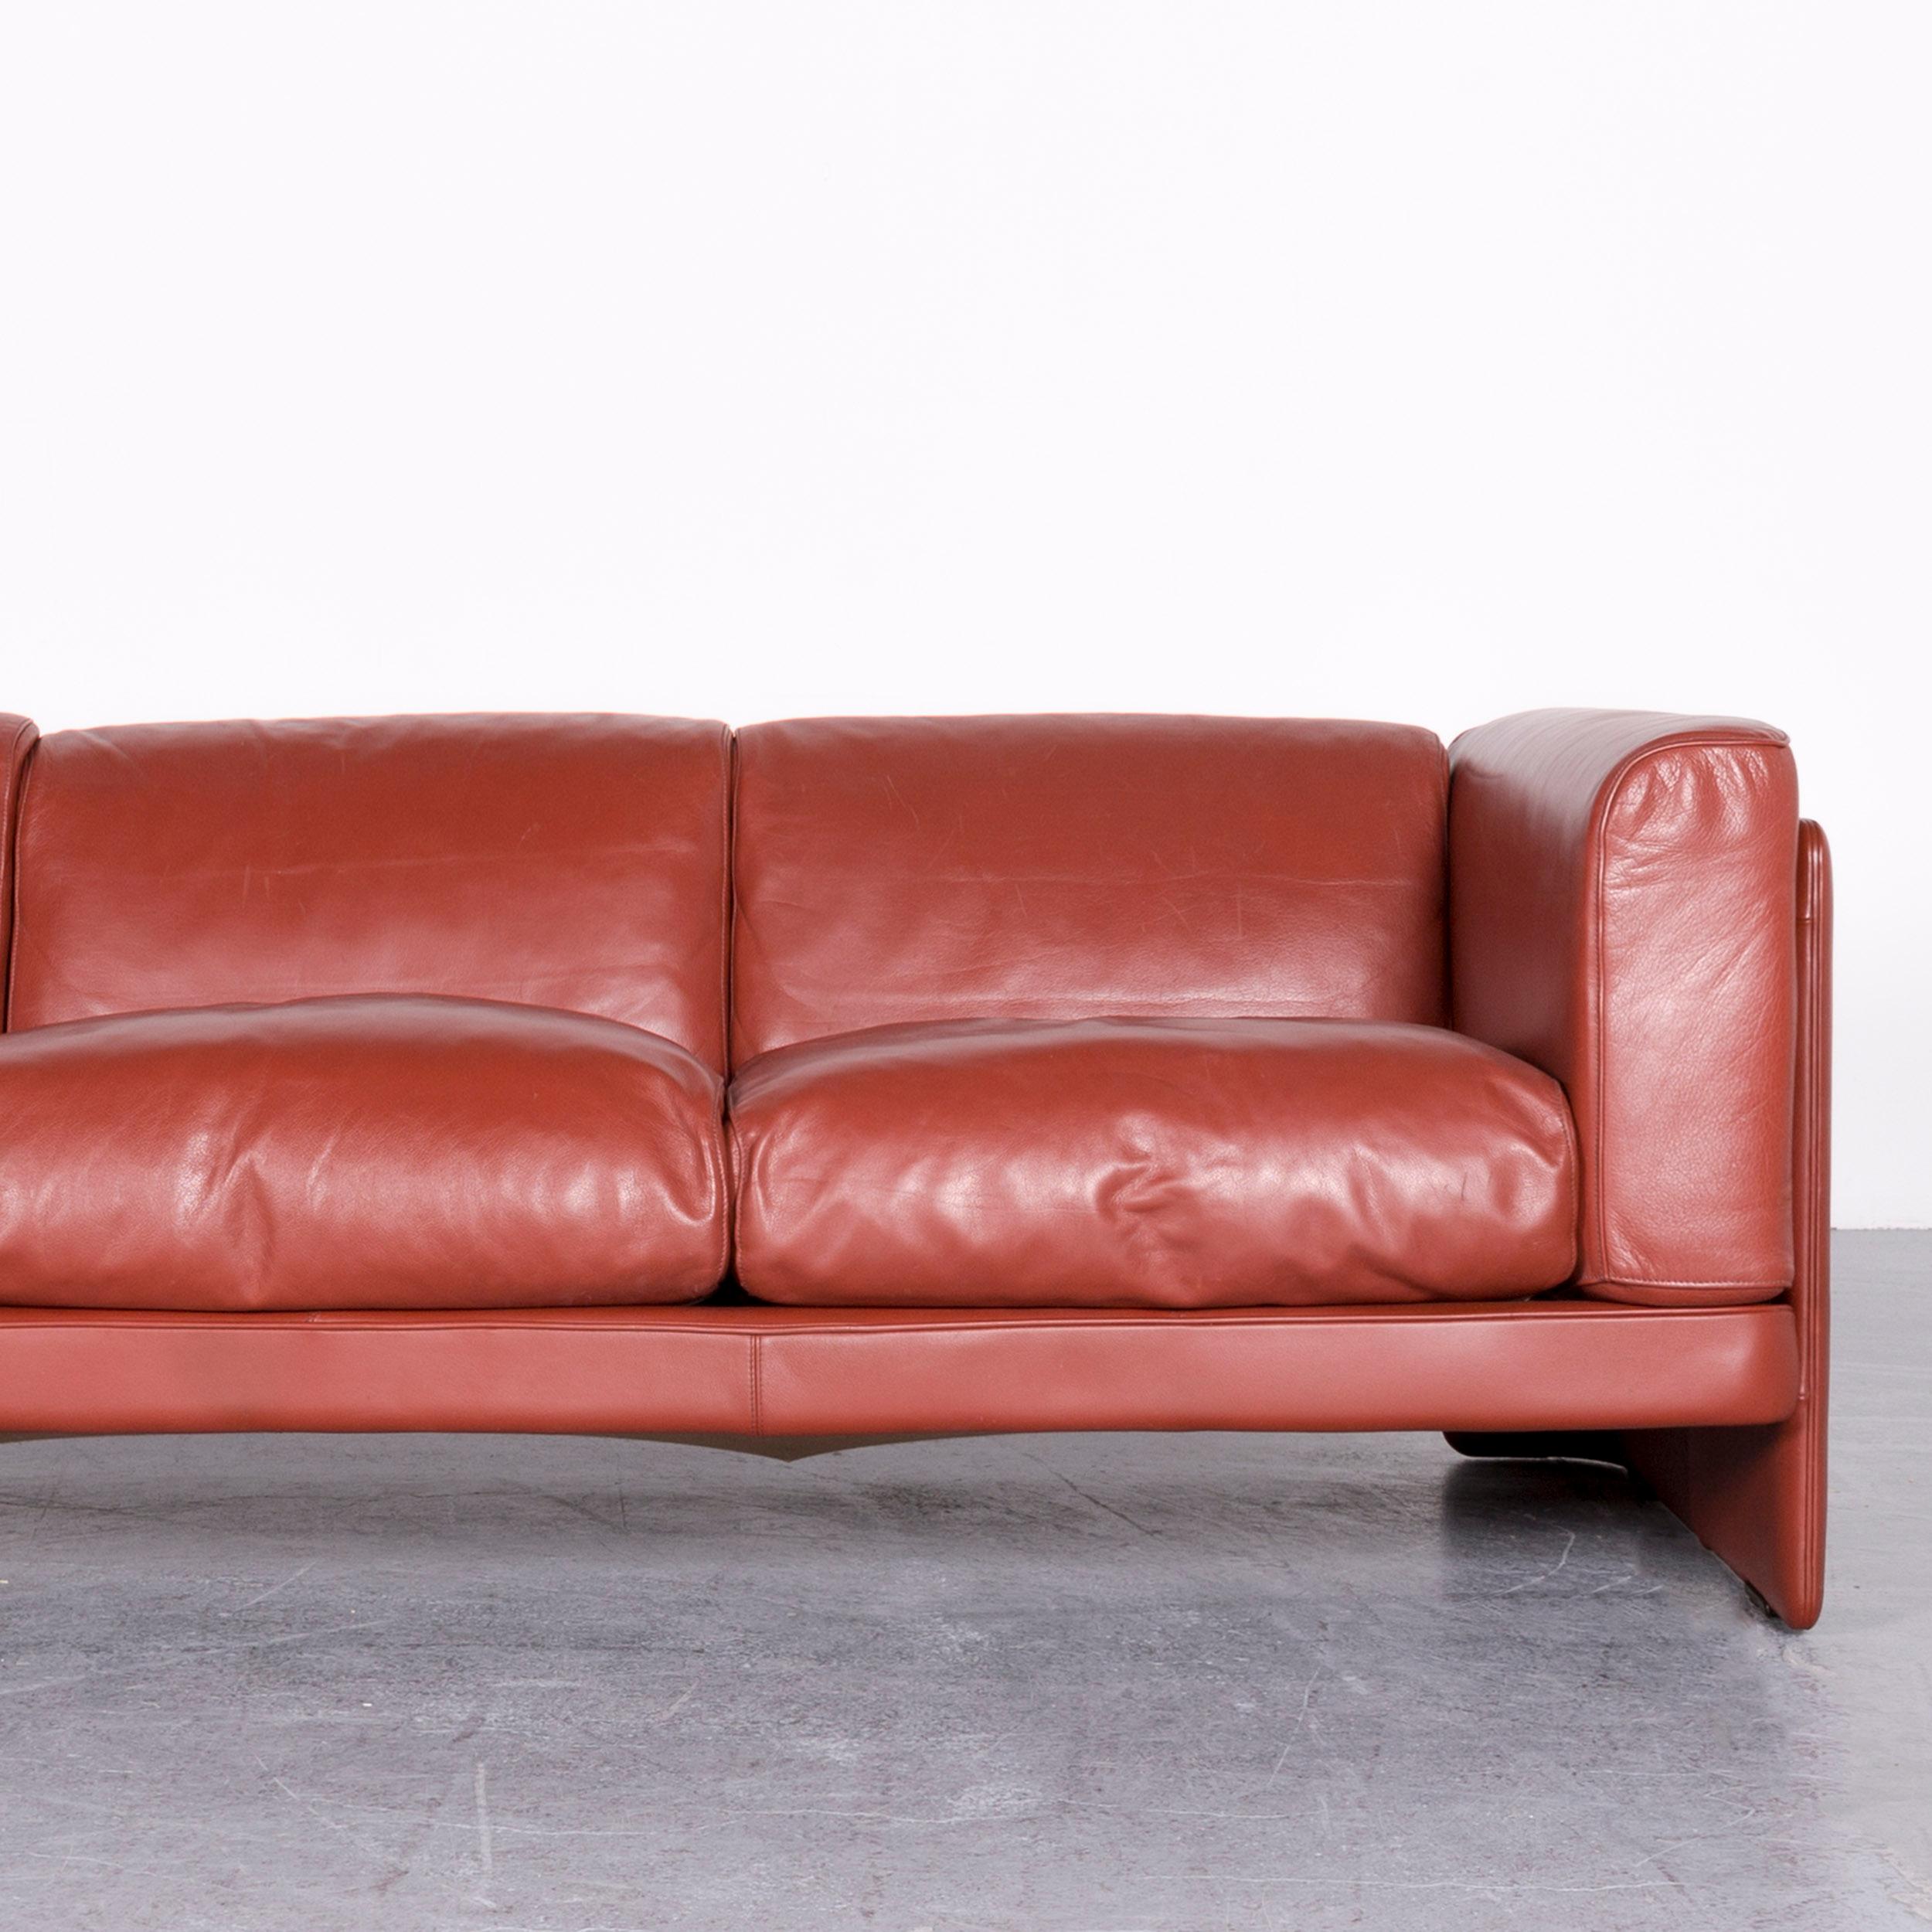 Contemporary Poltrona Frau Le Chapanelle Designer Leather Sofa Orange by Tito Agnoli For Sale